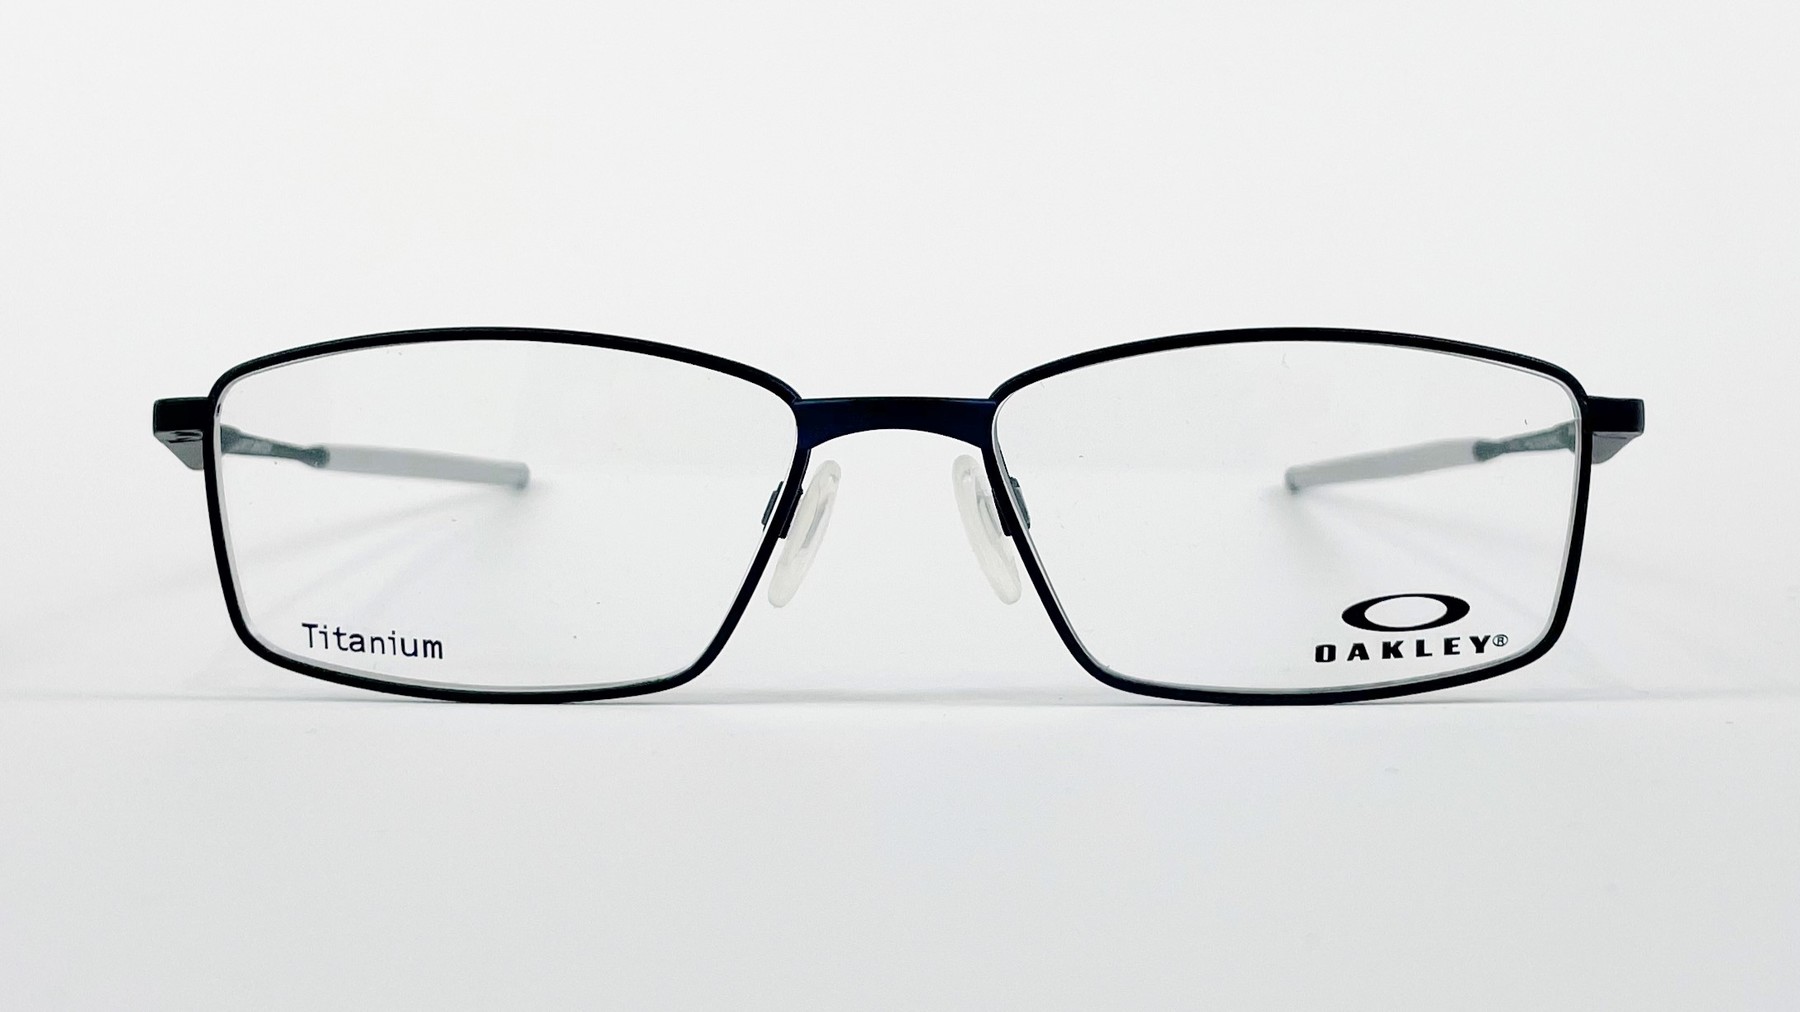 OAKLEY OX5121-0453, Korean glasses, sunglasses, eyeglasses, glasses